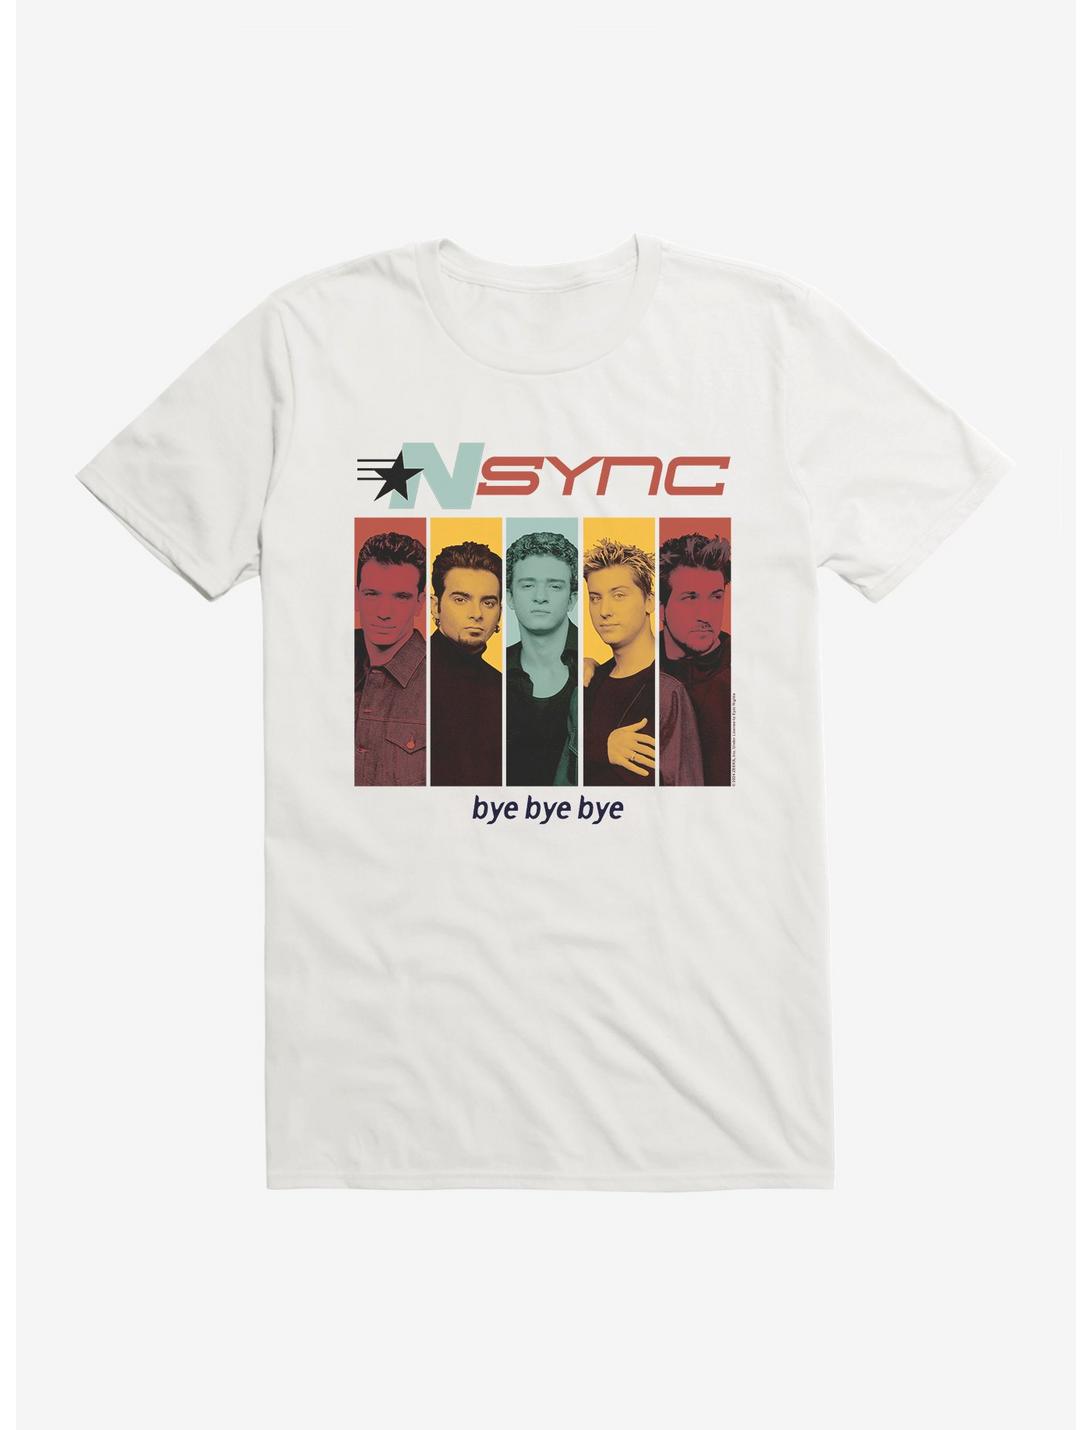 NSYNC Bye Bye Bye T-Shirt, WHITE, hi-res